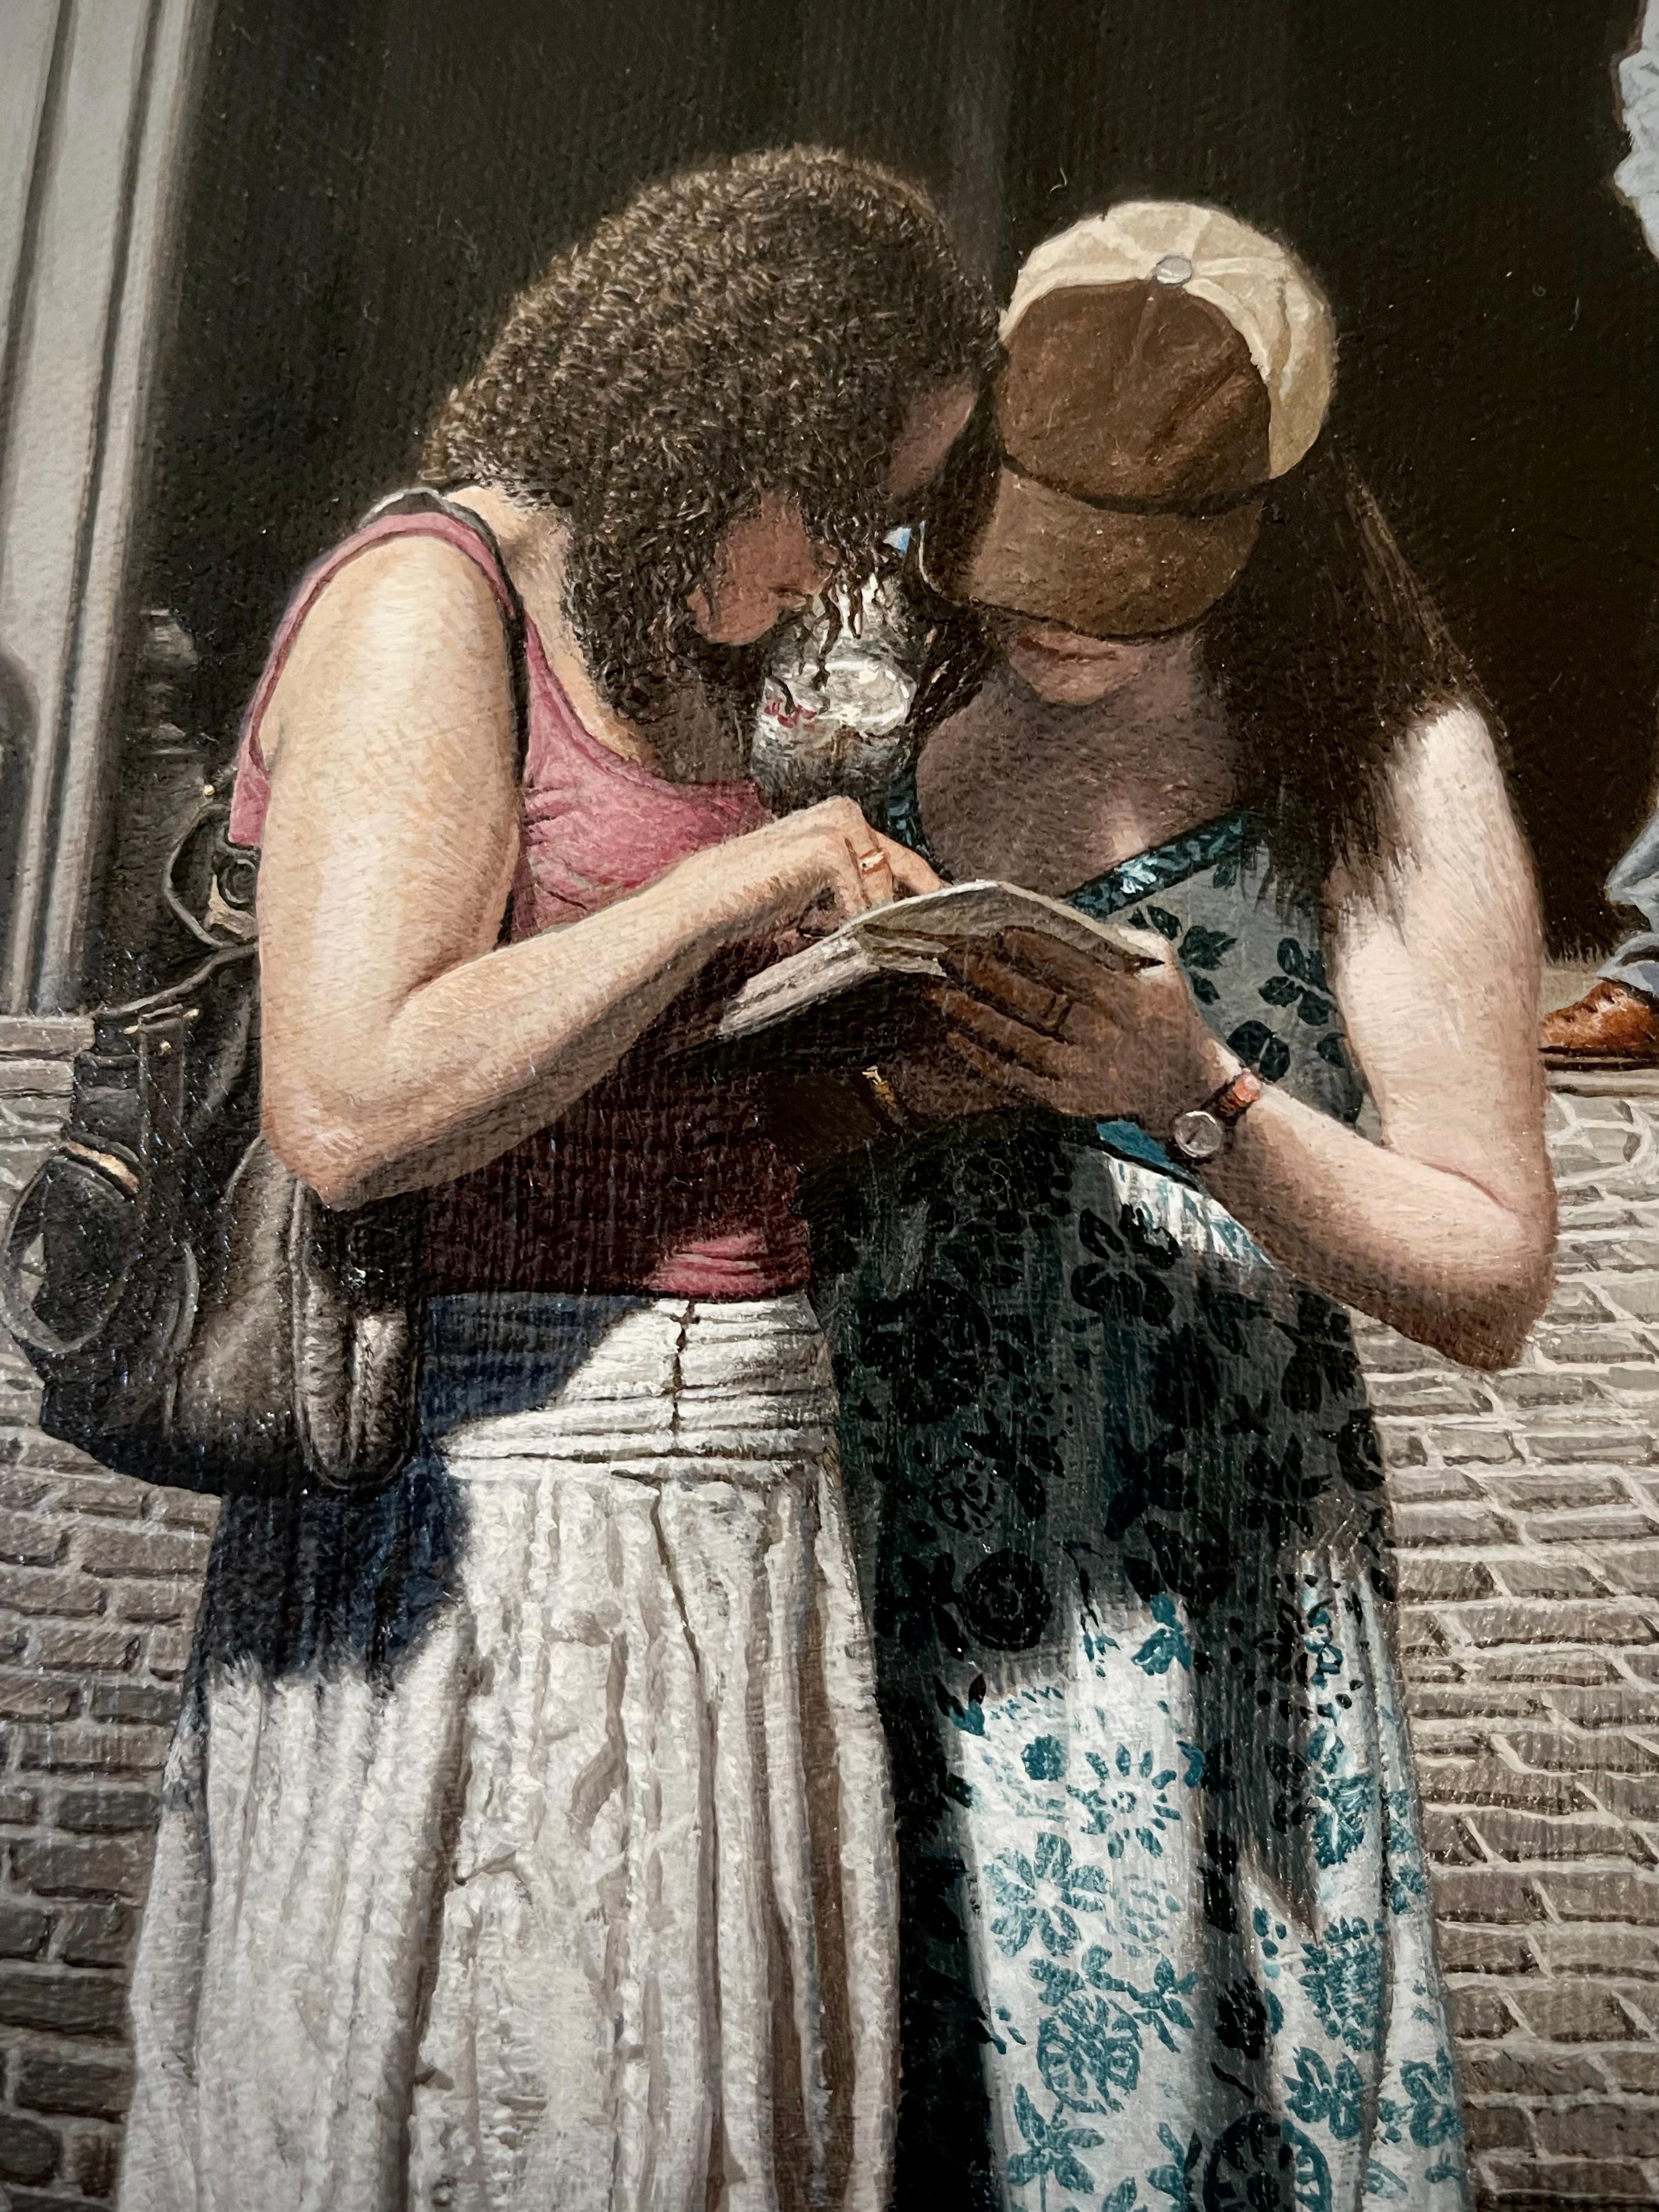 Rome, Italie, paysage urbain figuratif réaliste de deux filles et d'un homme dans une rue romaine - Painting de Stone Roberts